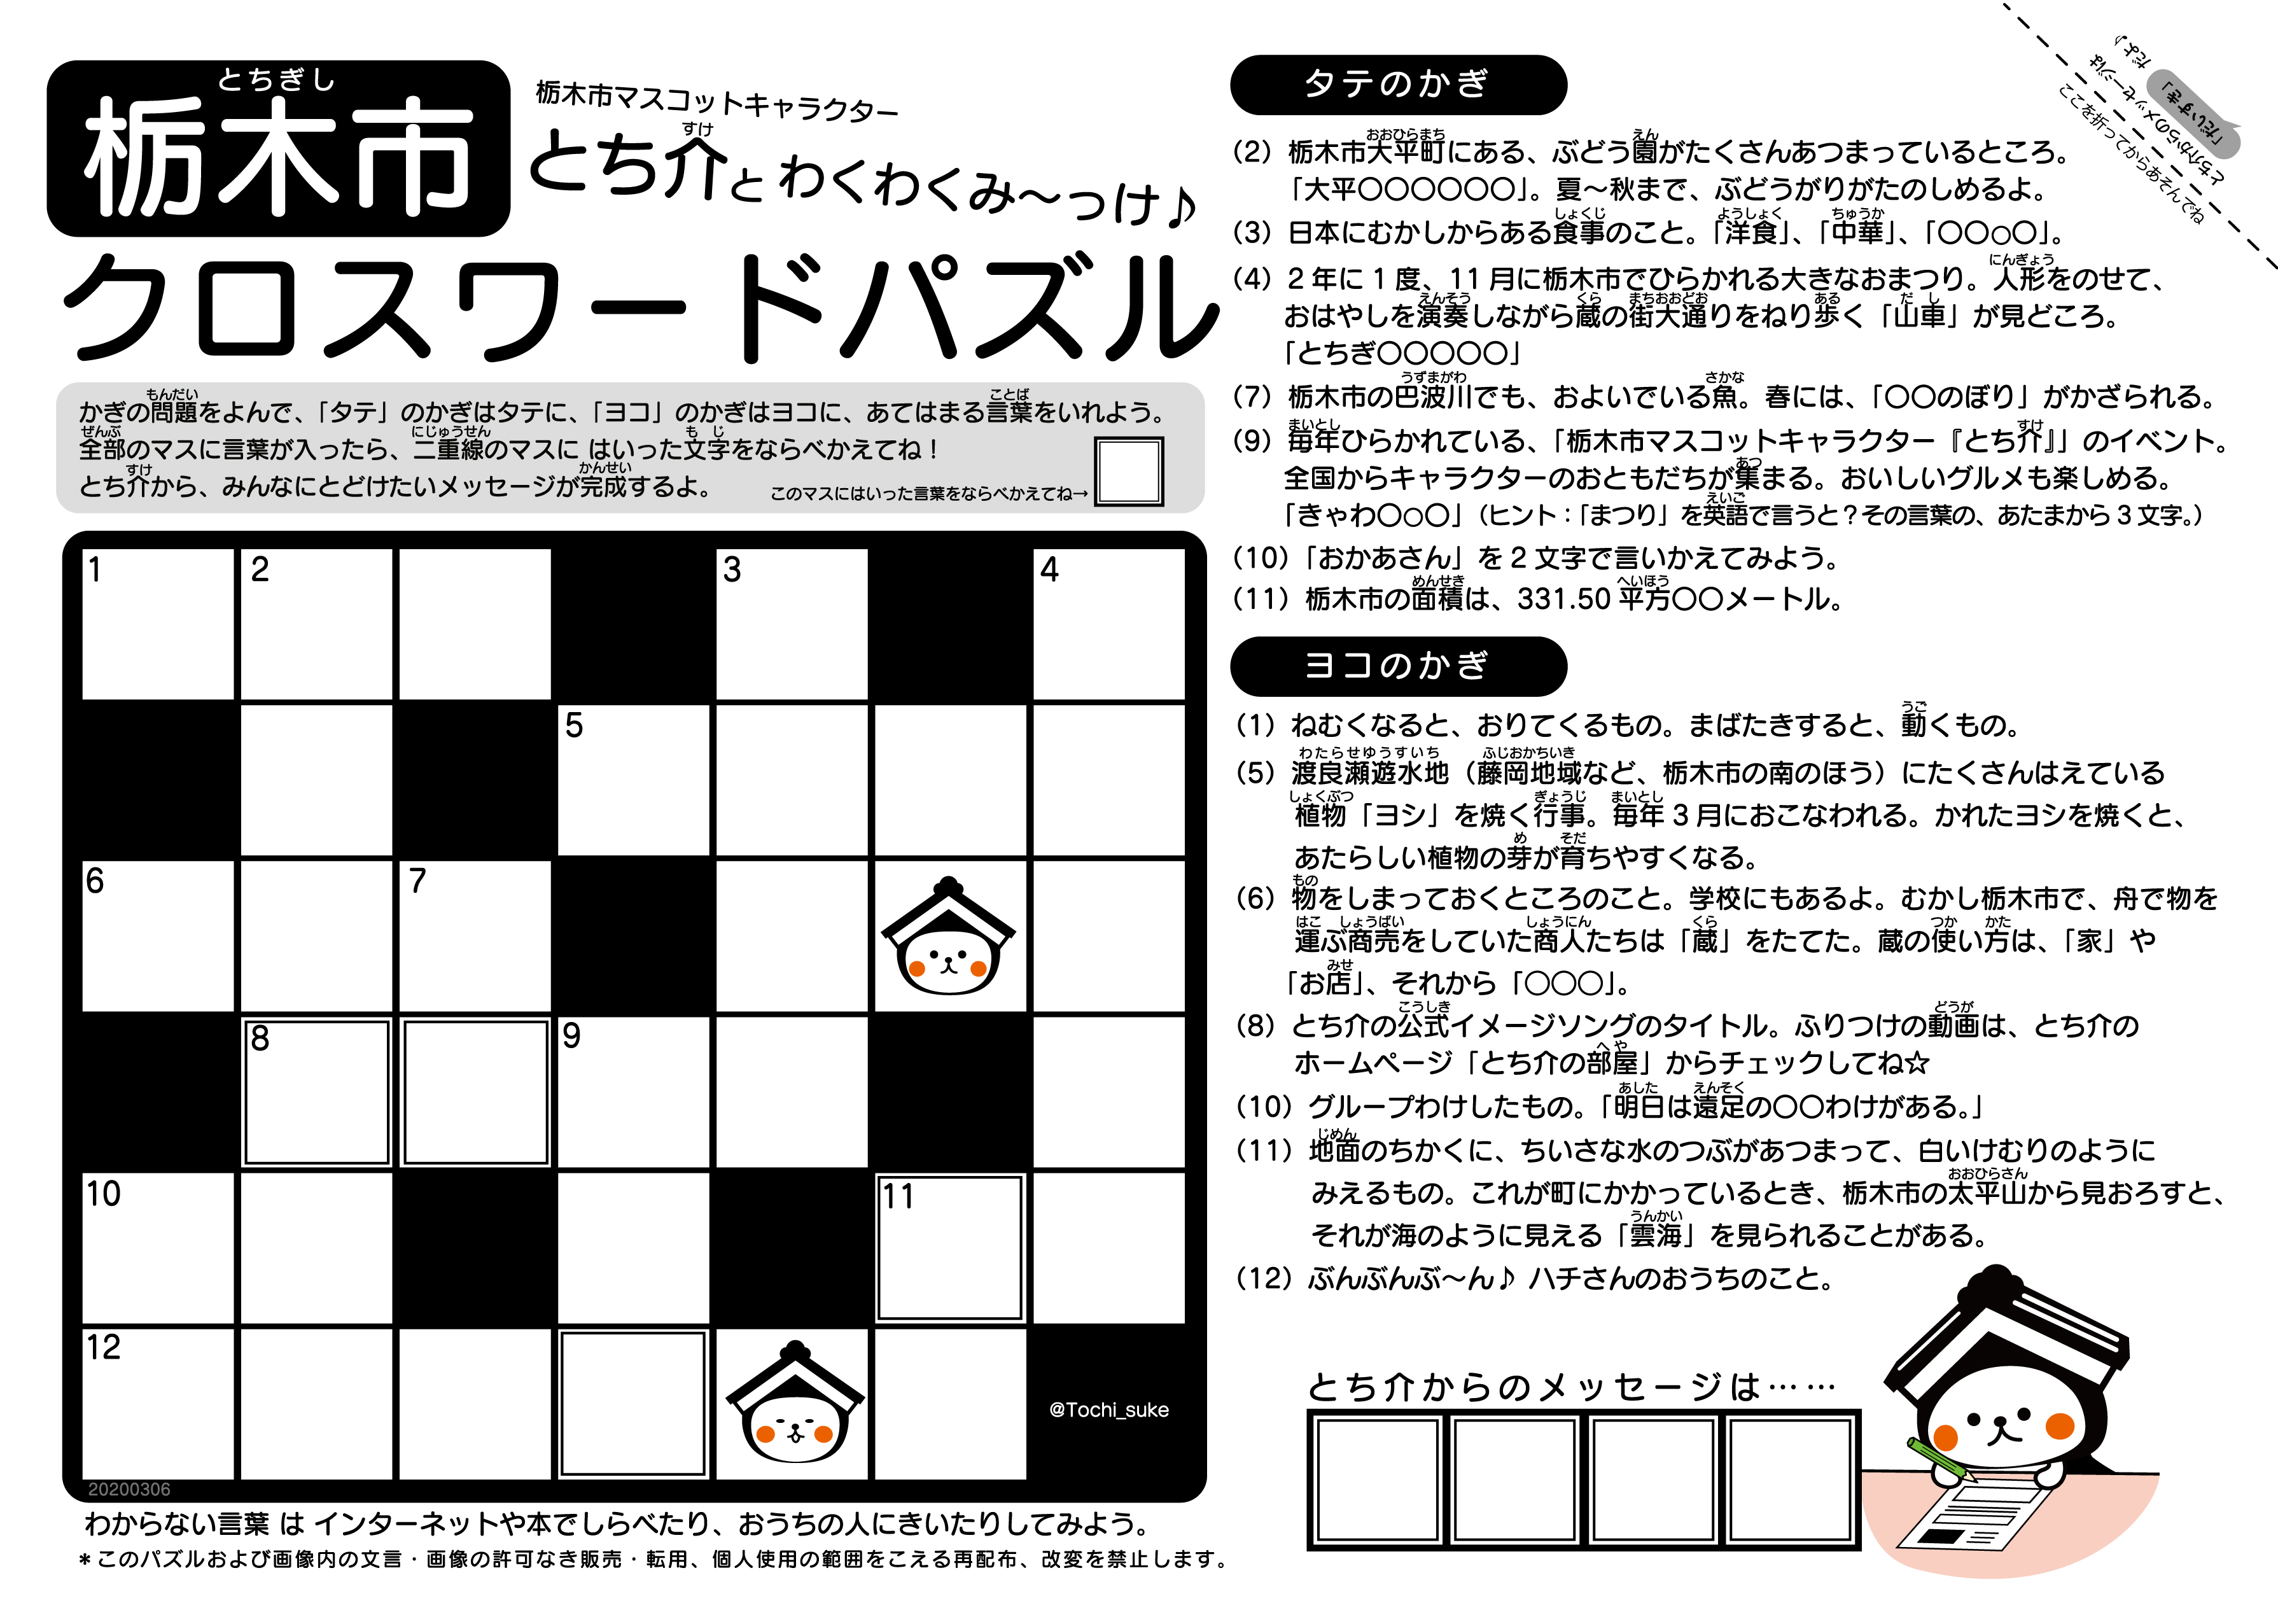 とち介とわくわくみ っけ 栃木市クロスワードパズル 栃木市ホームページ